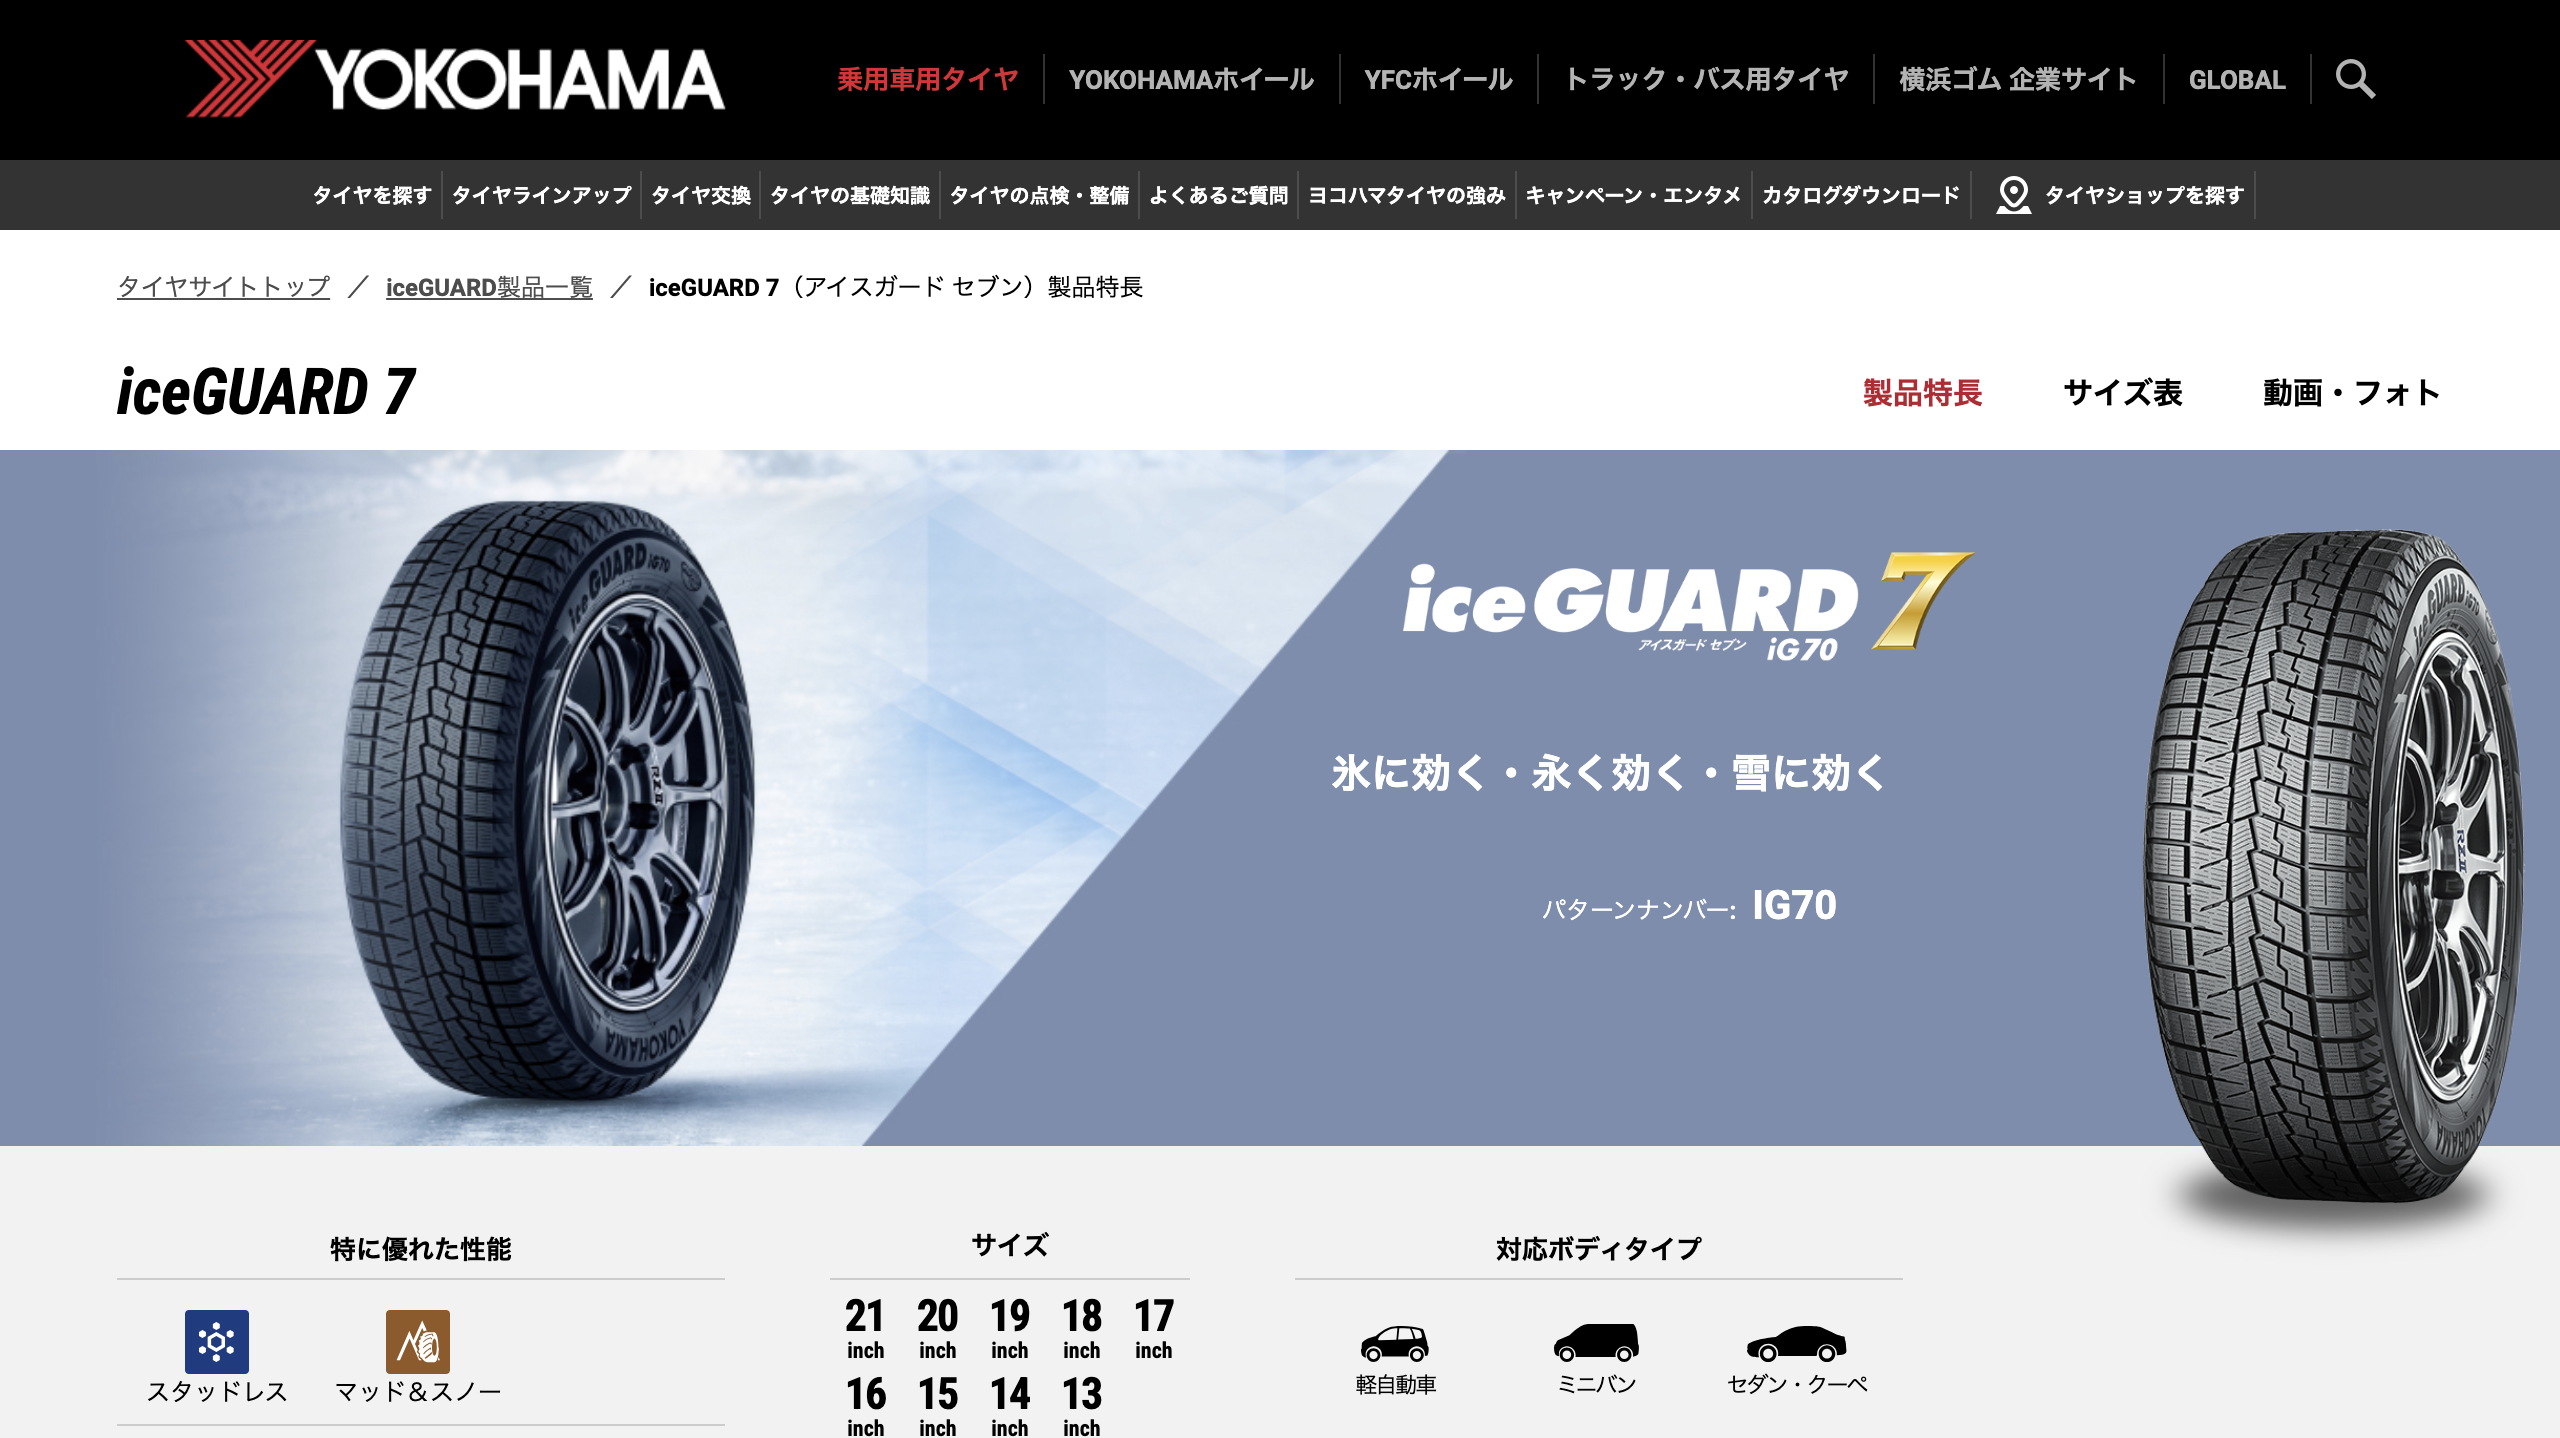 iceGUARD 7_製品特長 - ヨコハマタイヤ キャプチャ画像